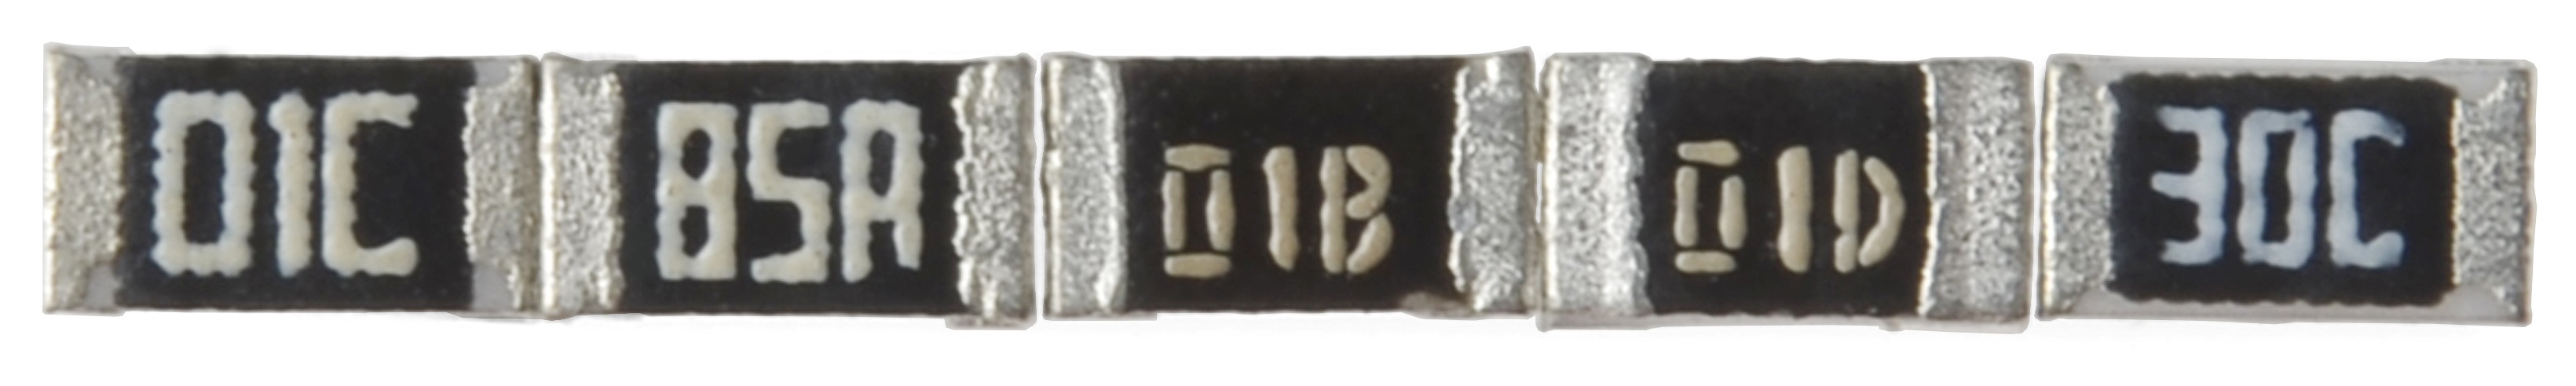 Resistor yang ditandai dengan kode E-96